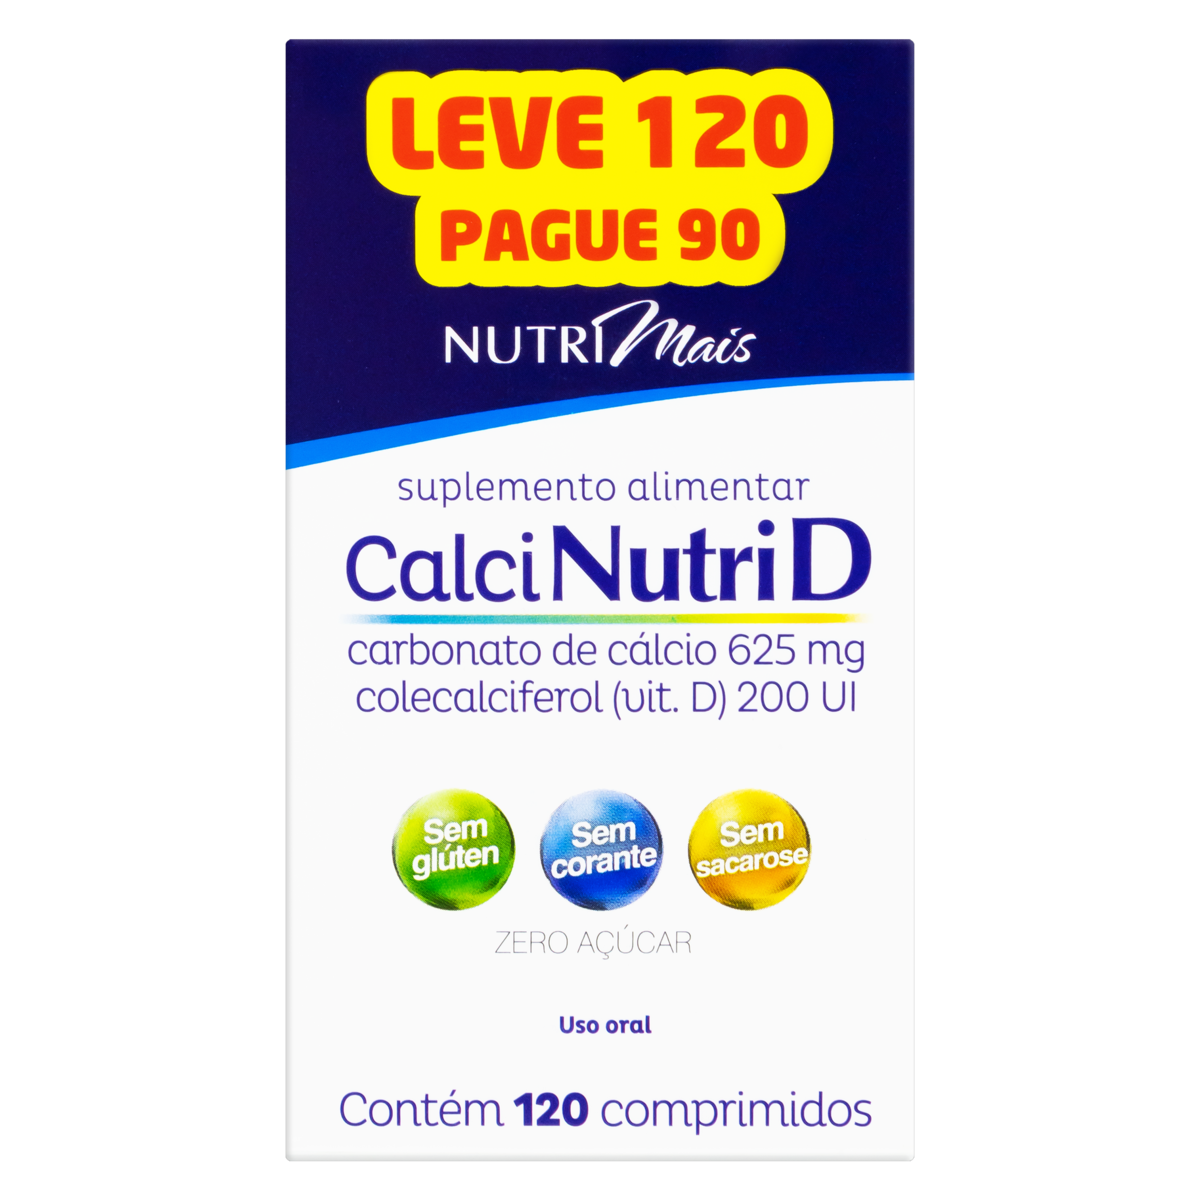 7898633380254 - NUTRIMAIS CALCINUTRI D ZERO AÇÚCAR NUTRIEX CAIXA LEVE 120 PAGUE 90 UNIDADES